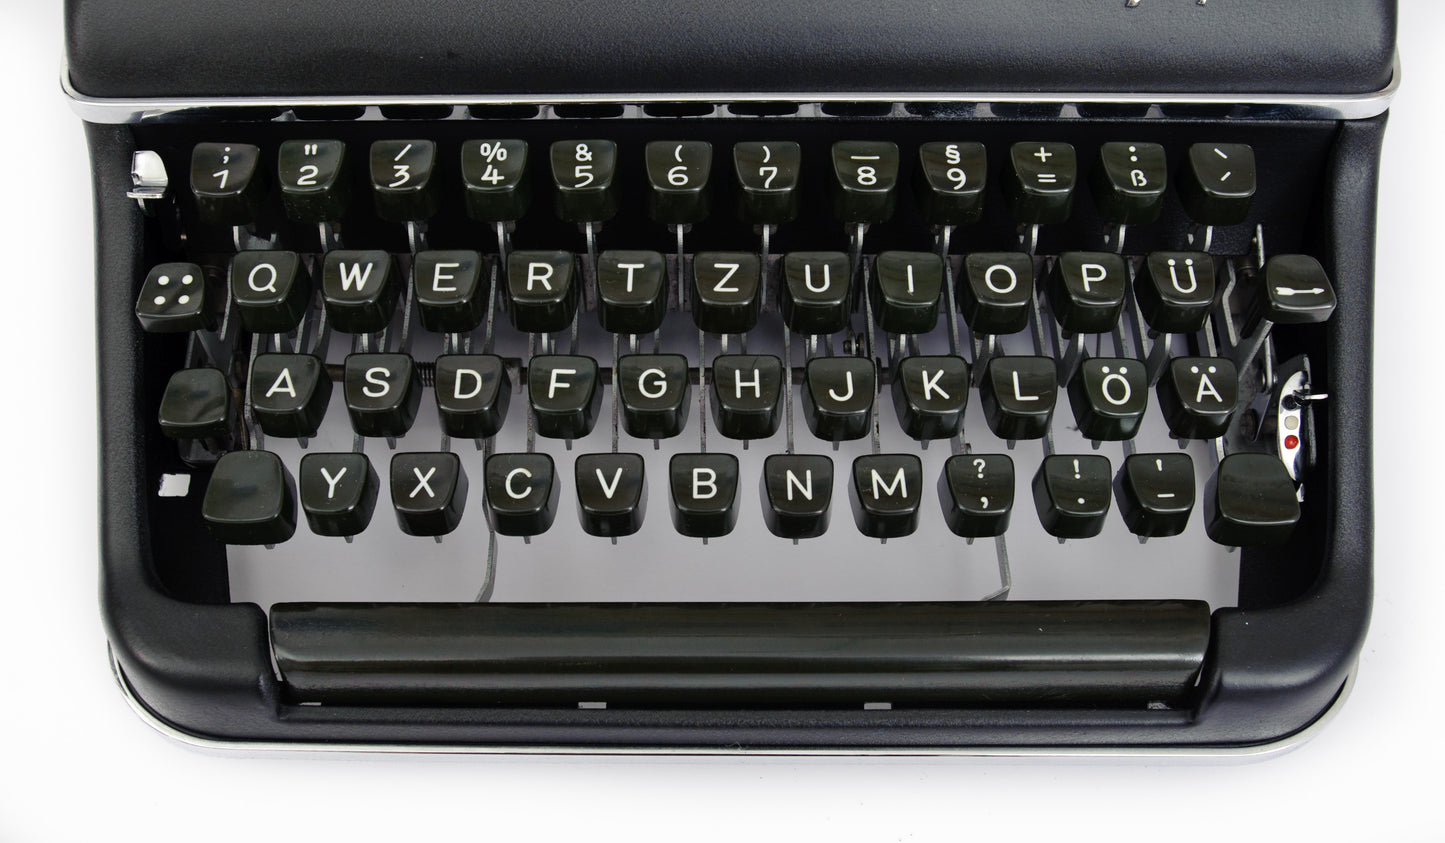 Schreibmaschine Olympia SM2, Schwarz